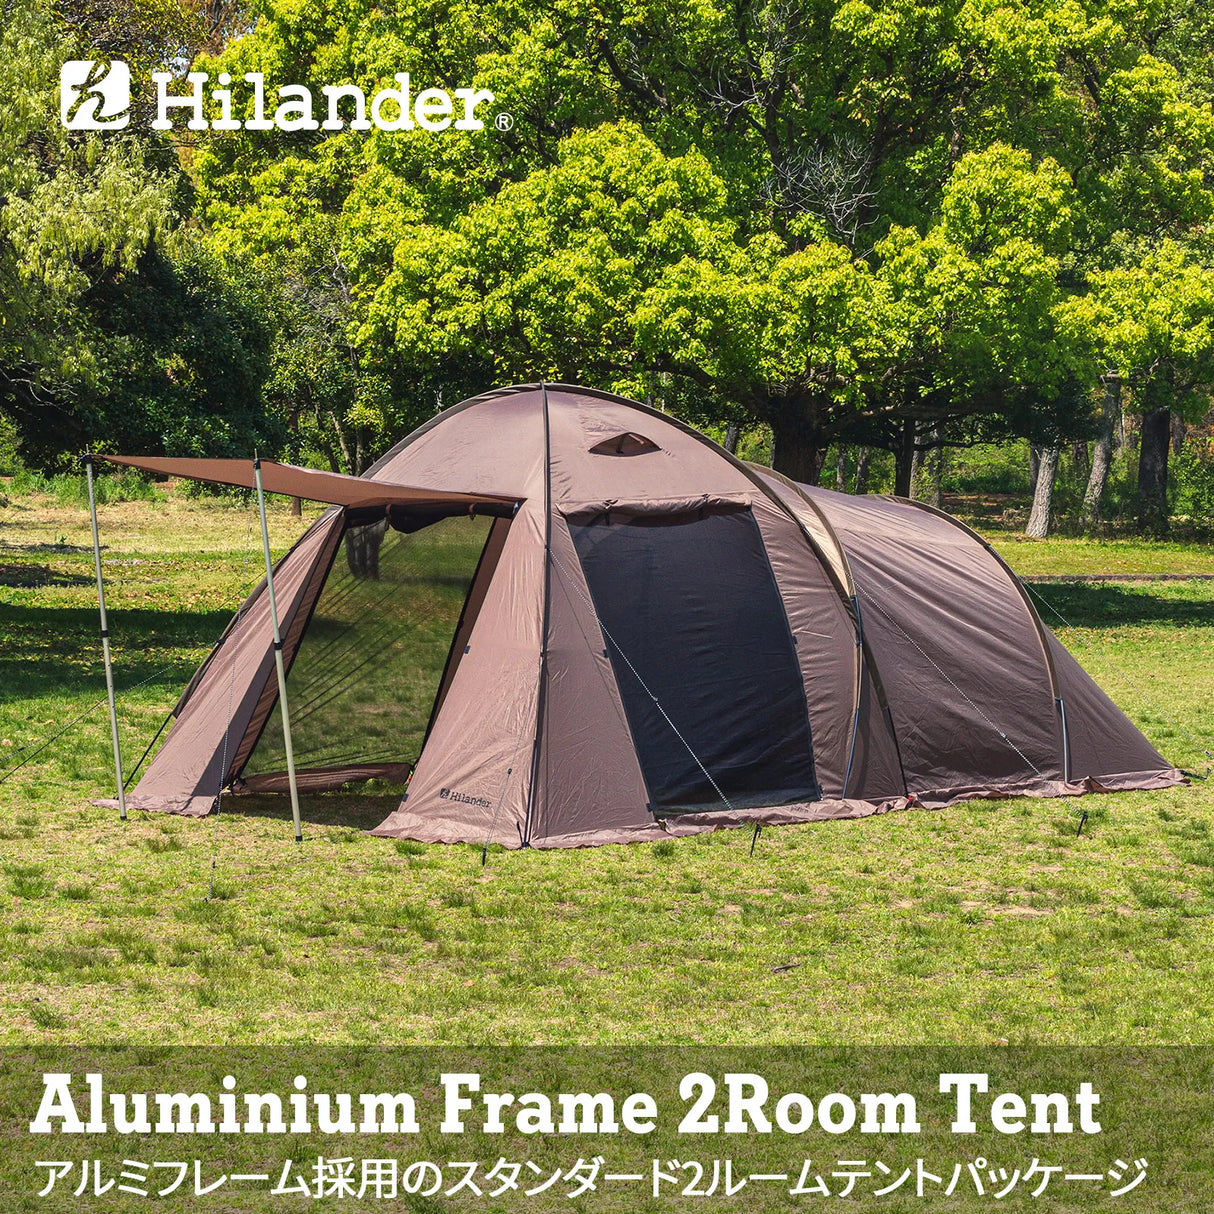 hilander-alum-flame-2-rooms-tent-標準2室帳篷-hca0356的第1張產品相片